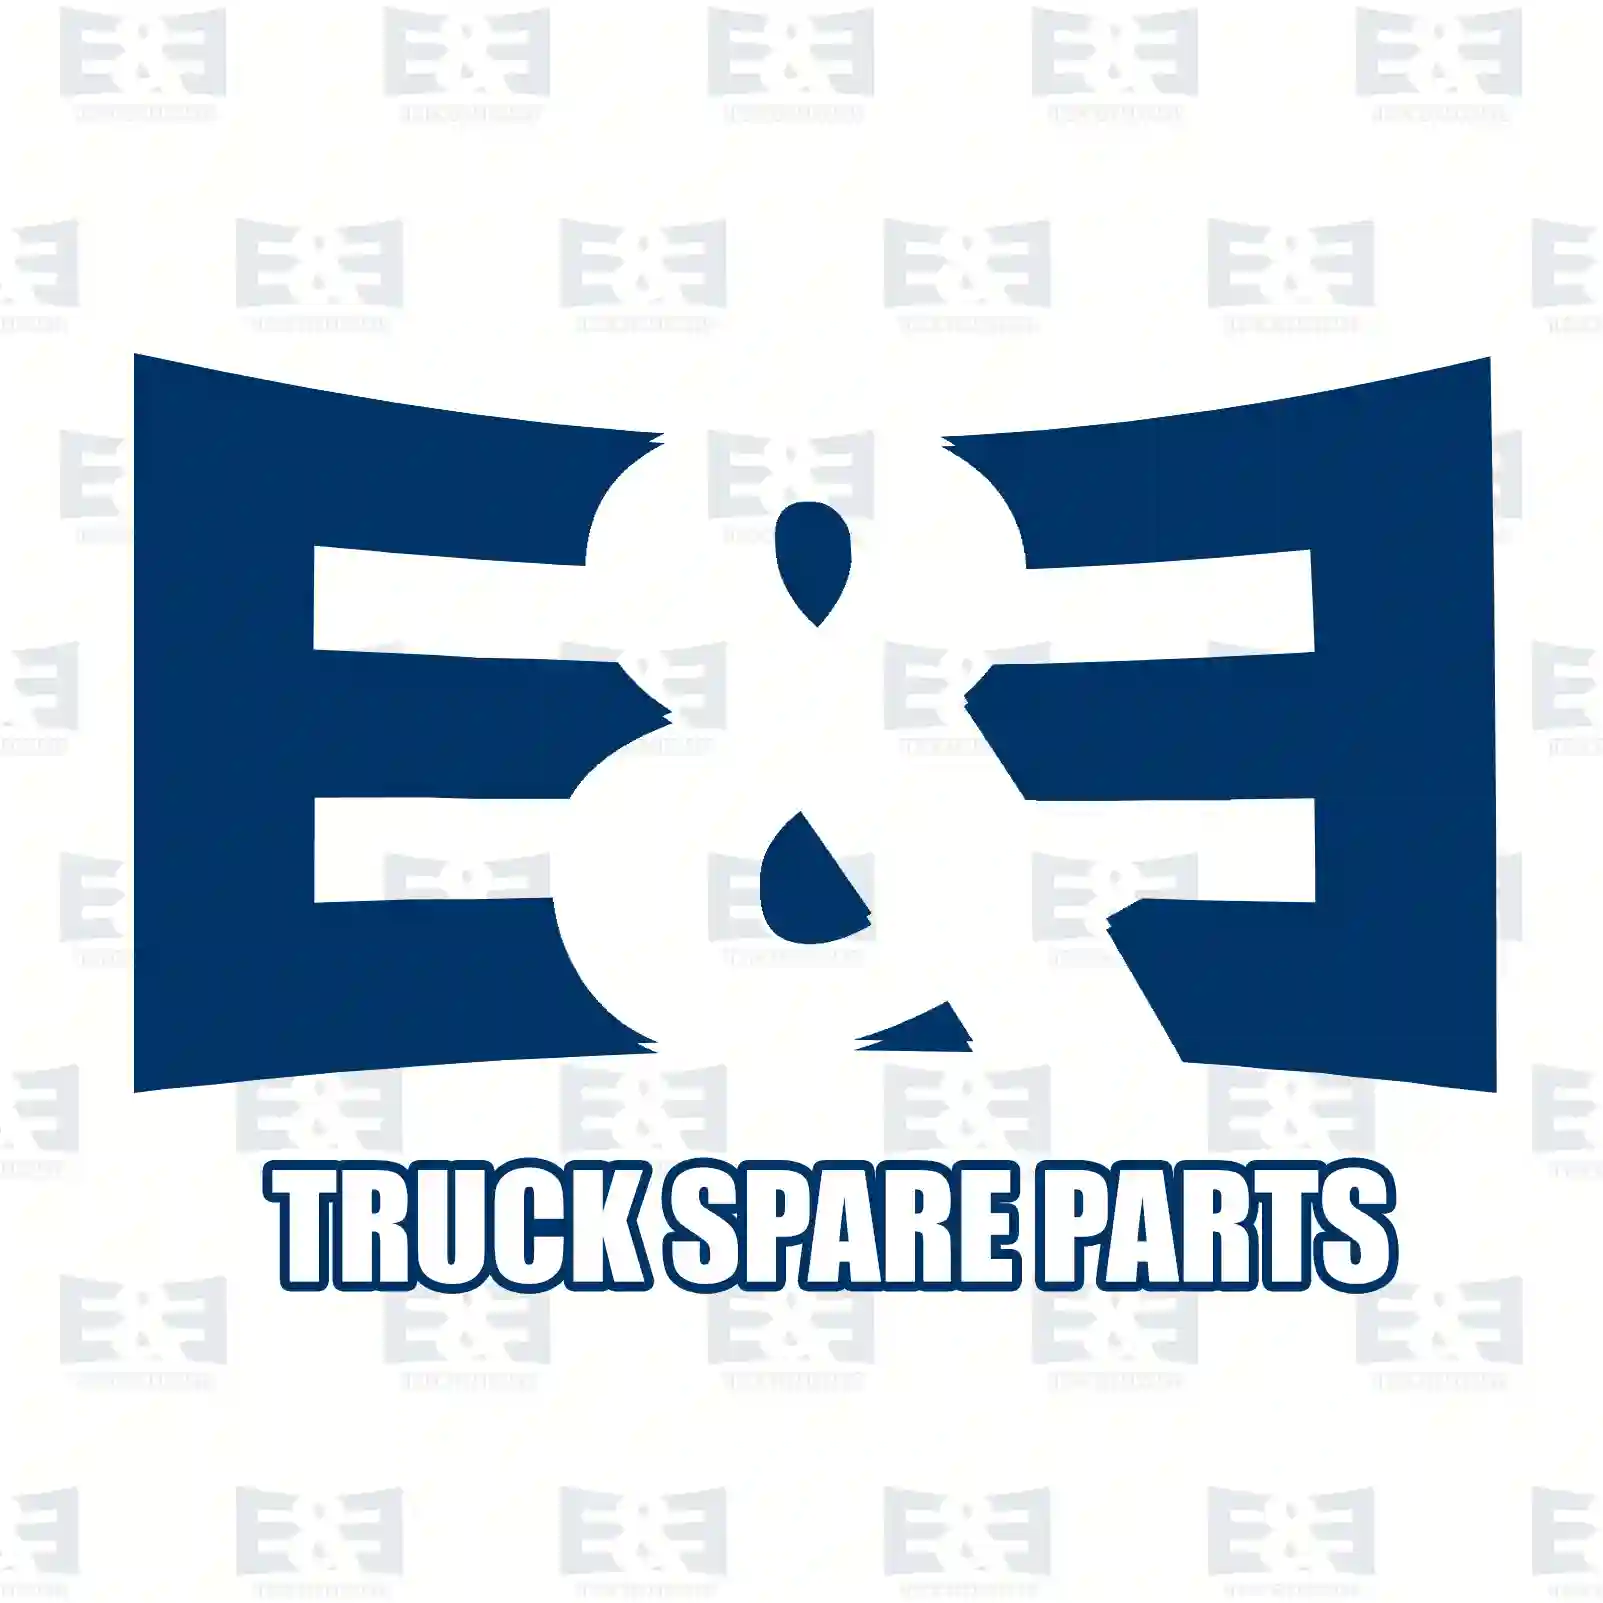 Oil filter kit, gearbox, 2E2278996, 7401521527, 7421479106, 7485108176, 20776259, 21479106, 85104076, 85104633, 85108176, ZG02439-0008 ||  2E2278996 E&E Truck Spare Parts | Truck Spare Parts, Auotomotive Spare Parts Oil filter kit, gearbox, 2E2278996, 7401521527, 7421479106, 7485108176, 20776259, 21479106, 85104076, 85104633, 85108176, ZG02439-0008 ||  2E2278996 E&E Truck Spare Parts | Truck Spare Parts, Auotomotive Spare Parts